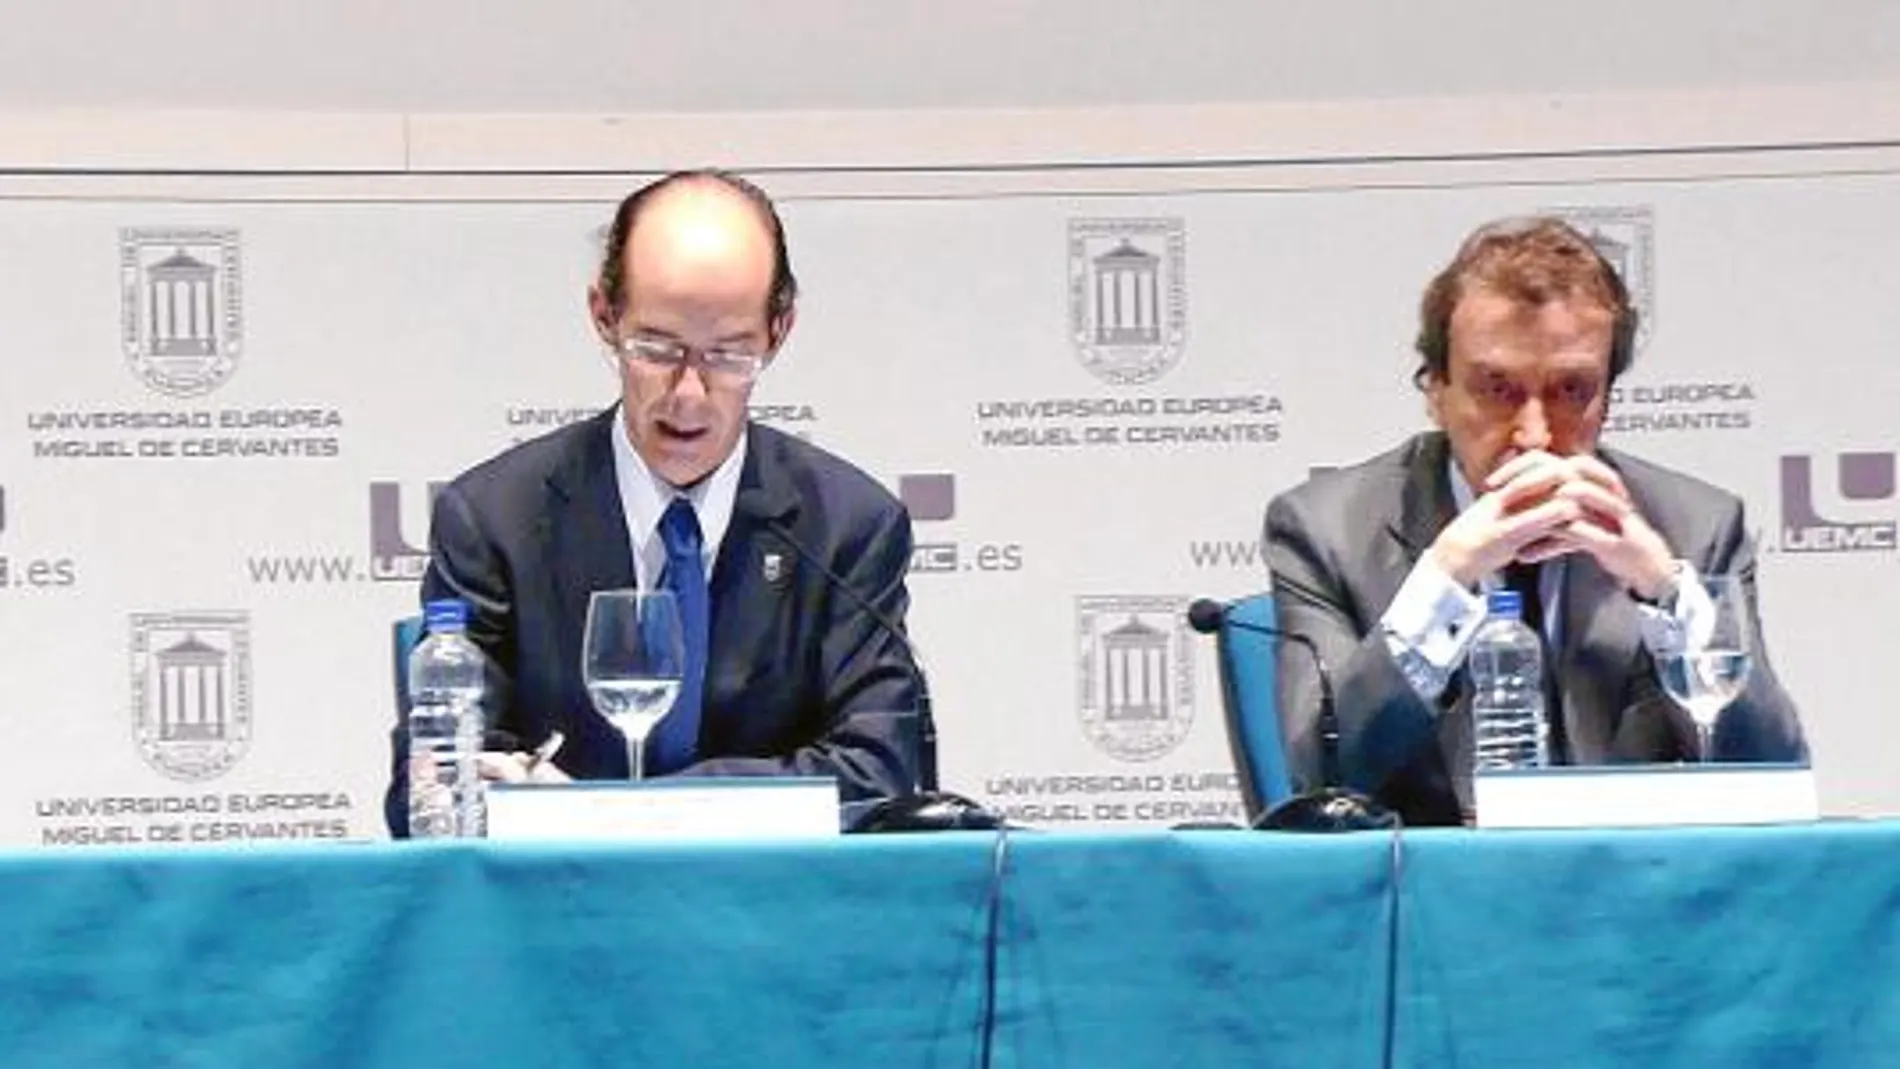 De Santiago-Juárez inaugura las jornadas, junto al rector de la UEMC, Martín J. Fernández Antolín